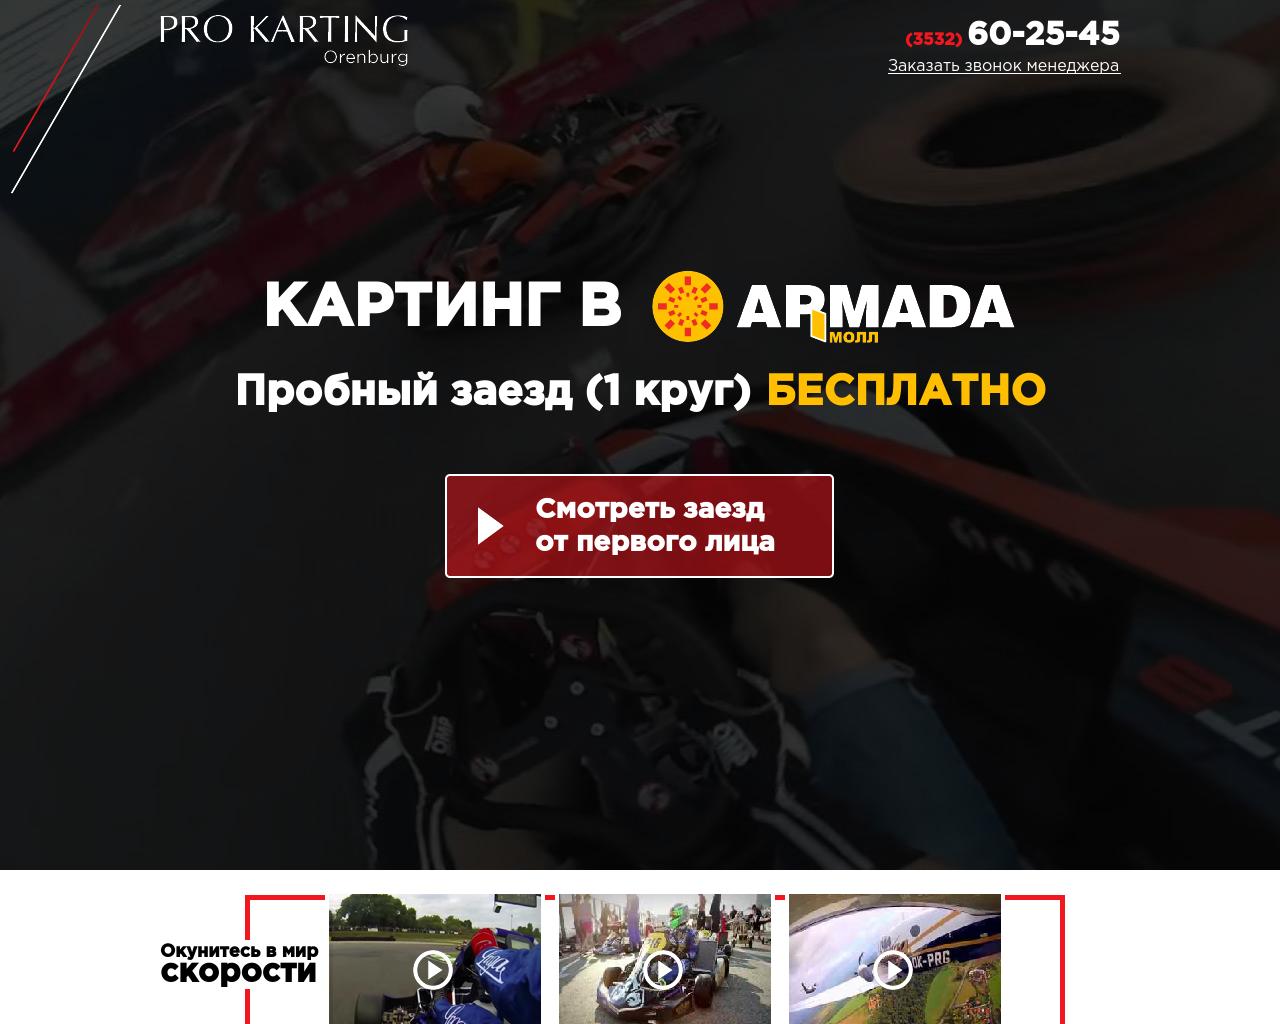 Изображение сайта pro-karting.ru в разрешении 1280x1024